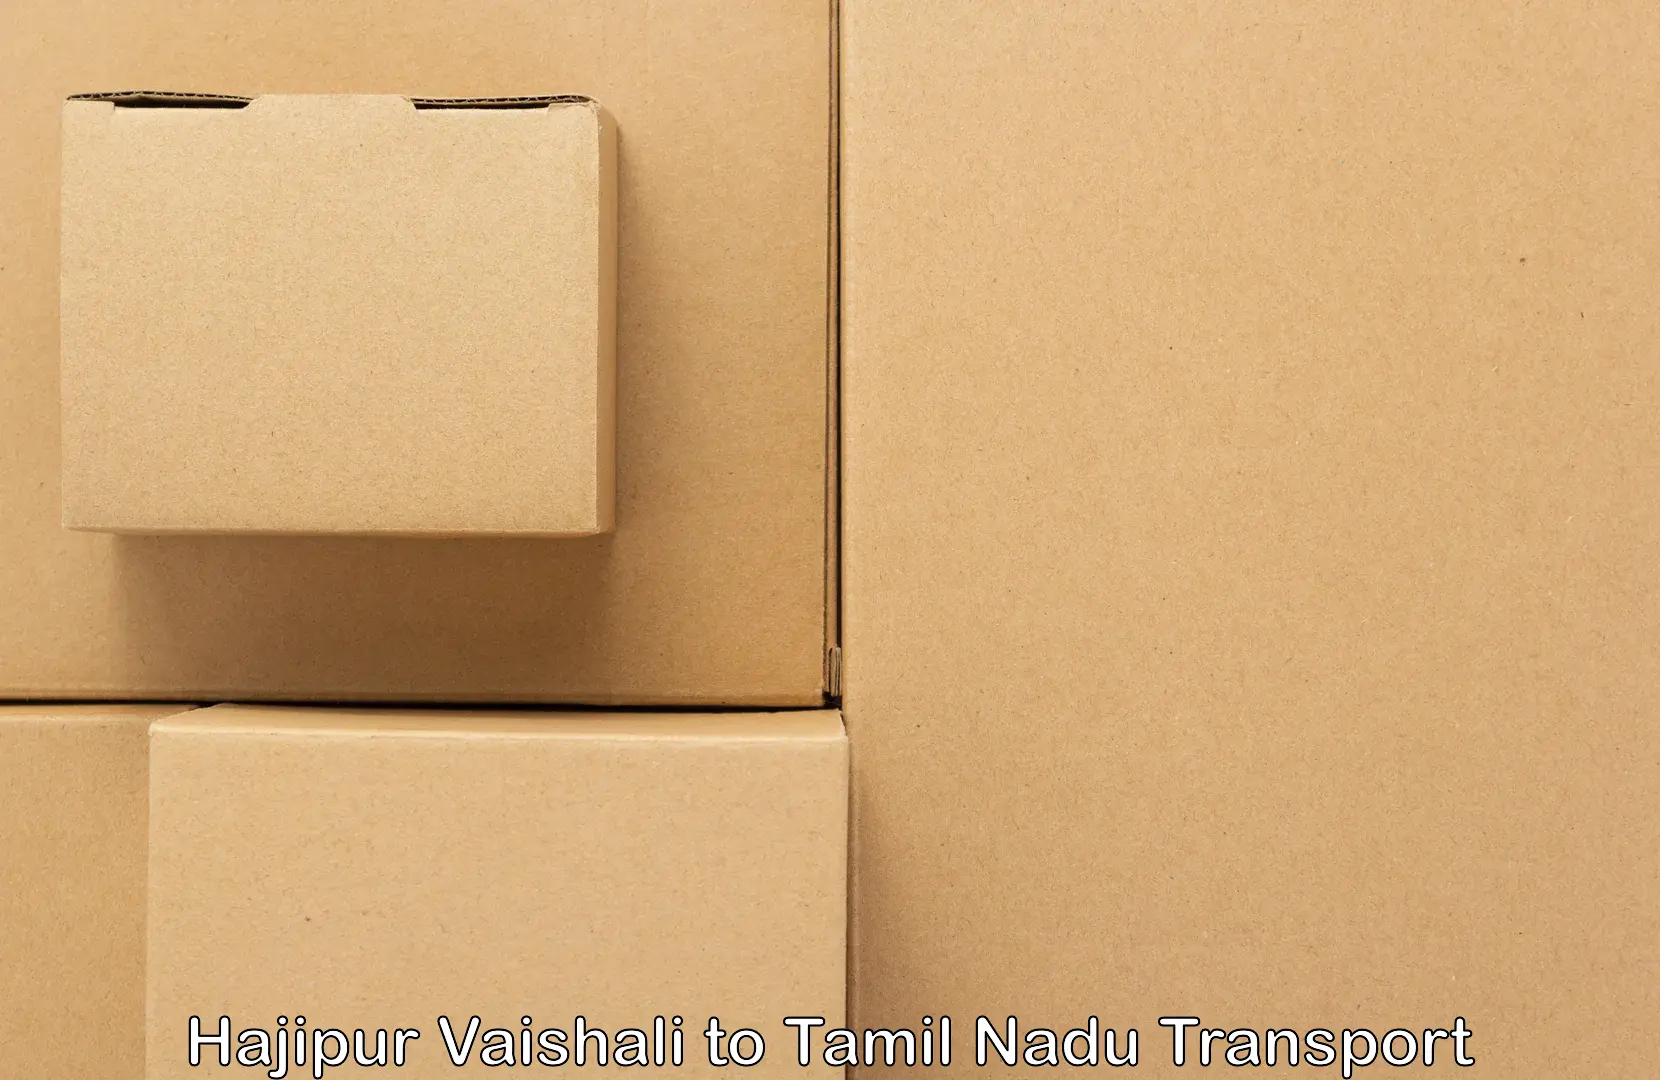 Daily parcel service transport in Hajipur Vaishali to Neyveli